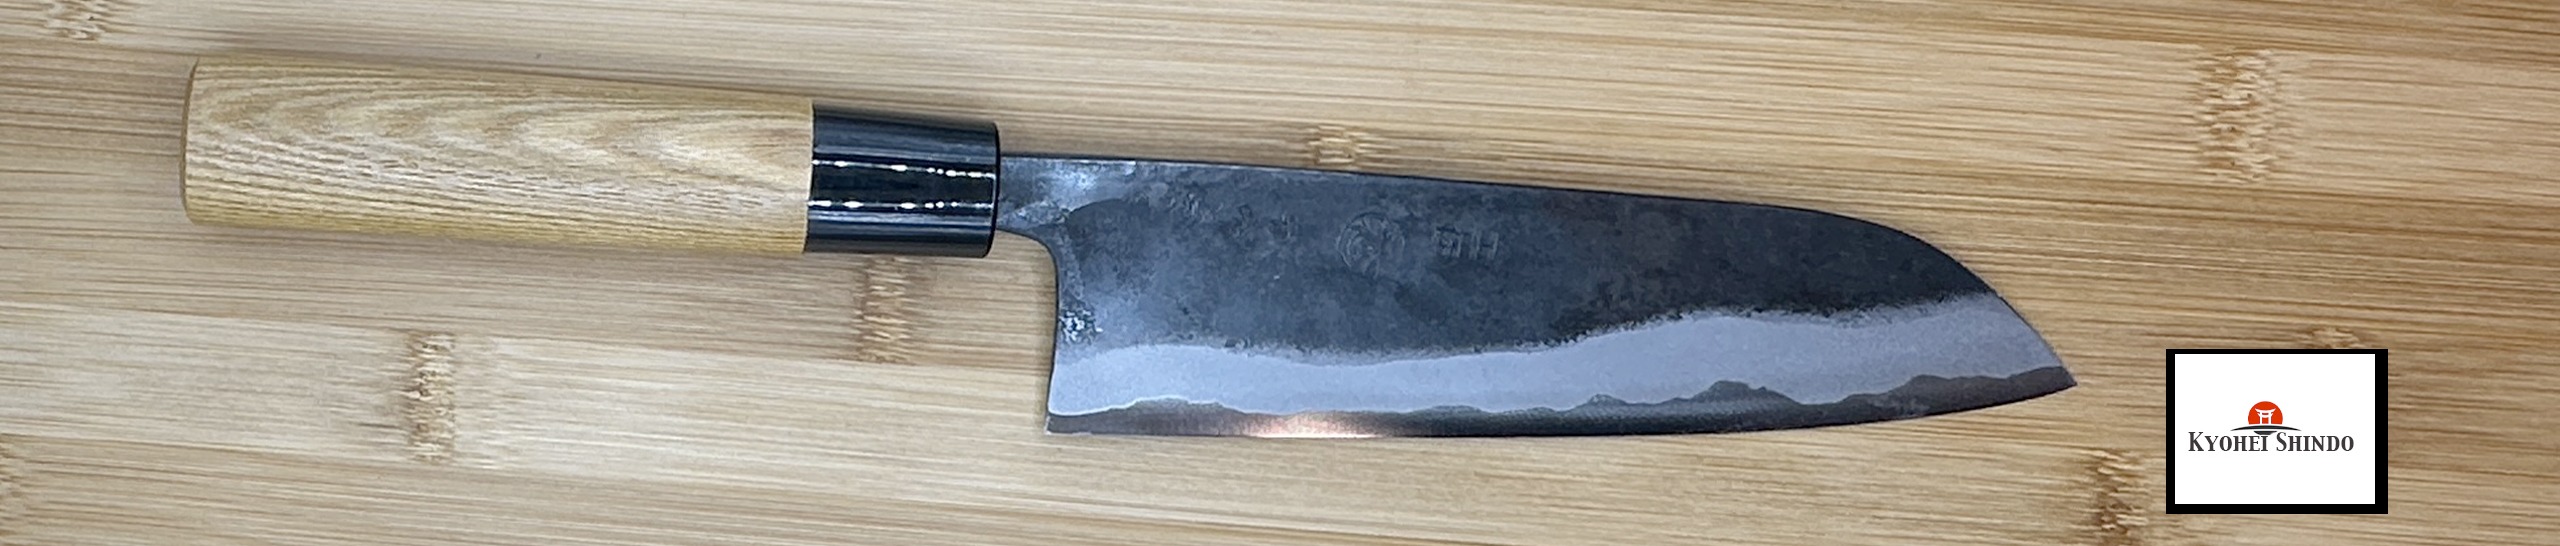 couteau japonais kyohei